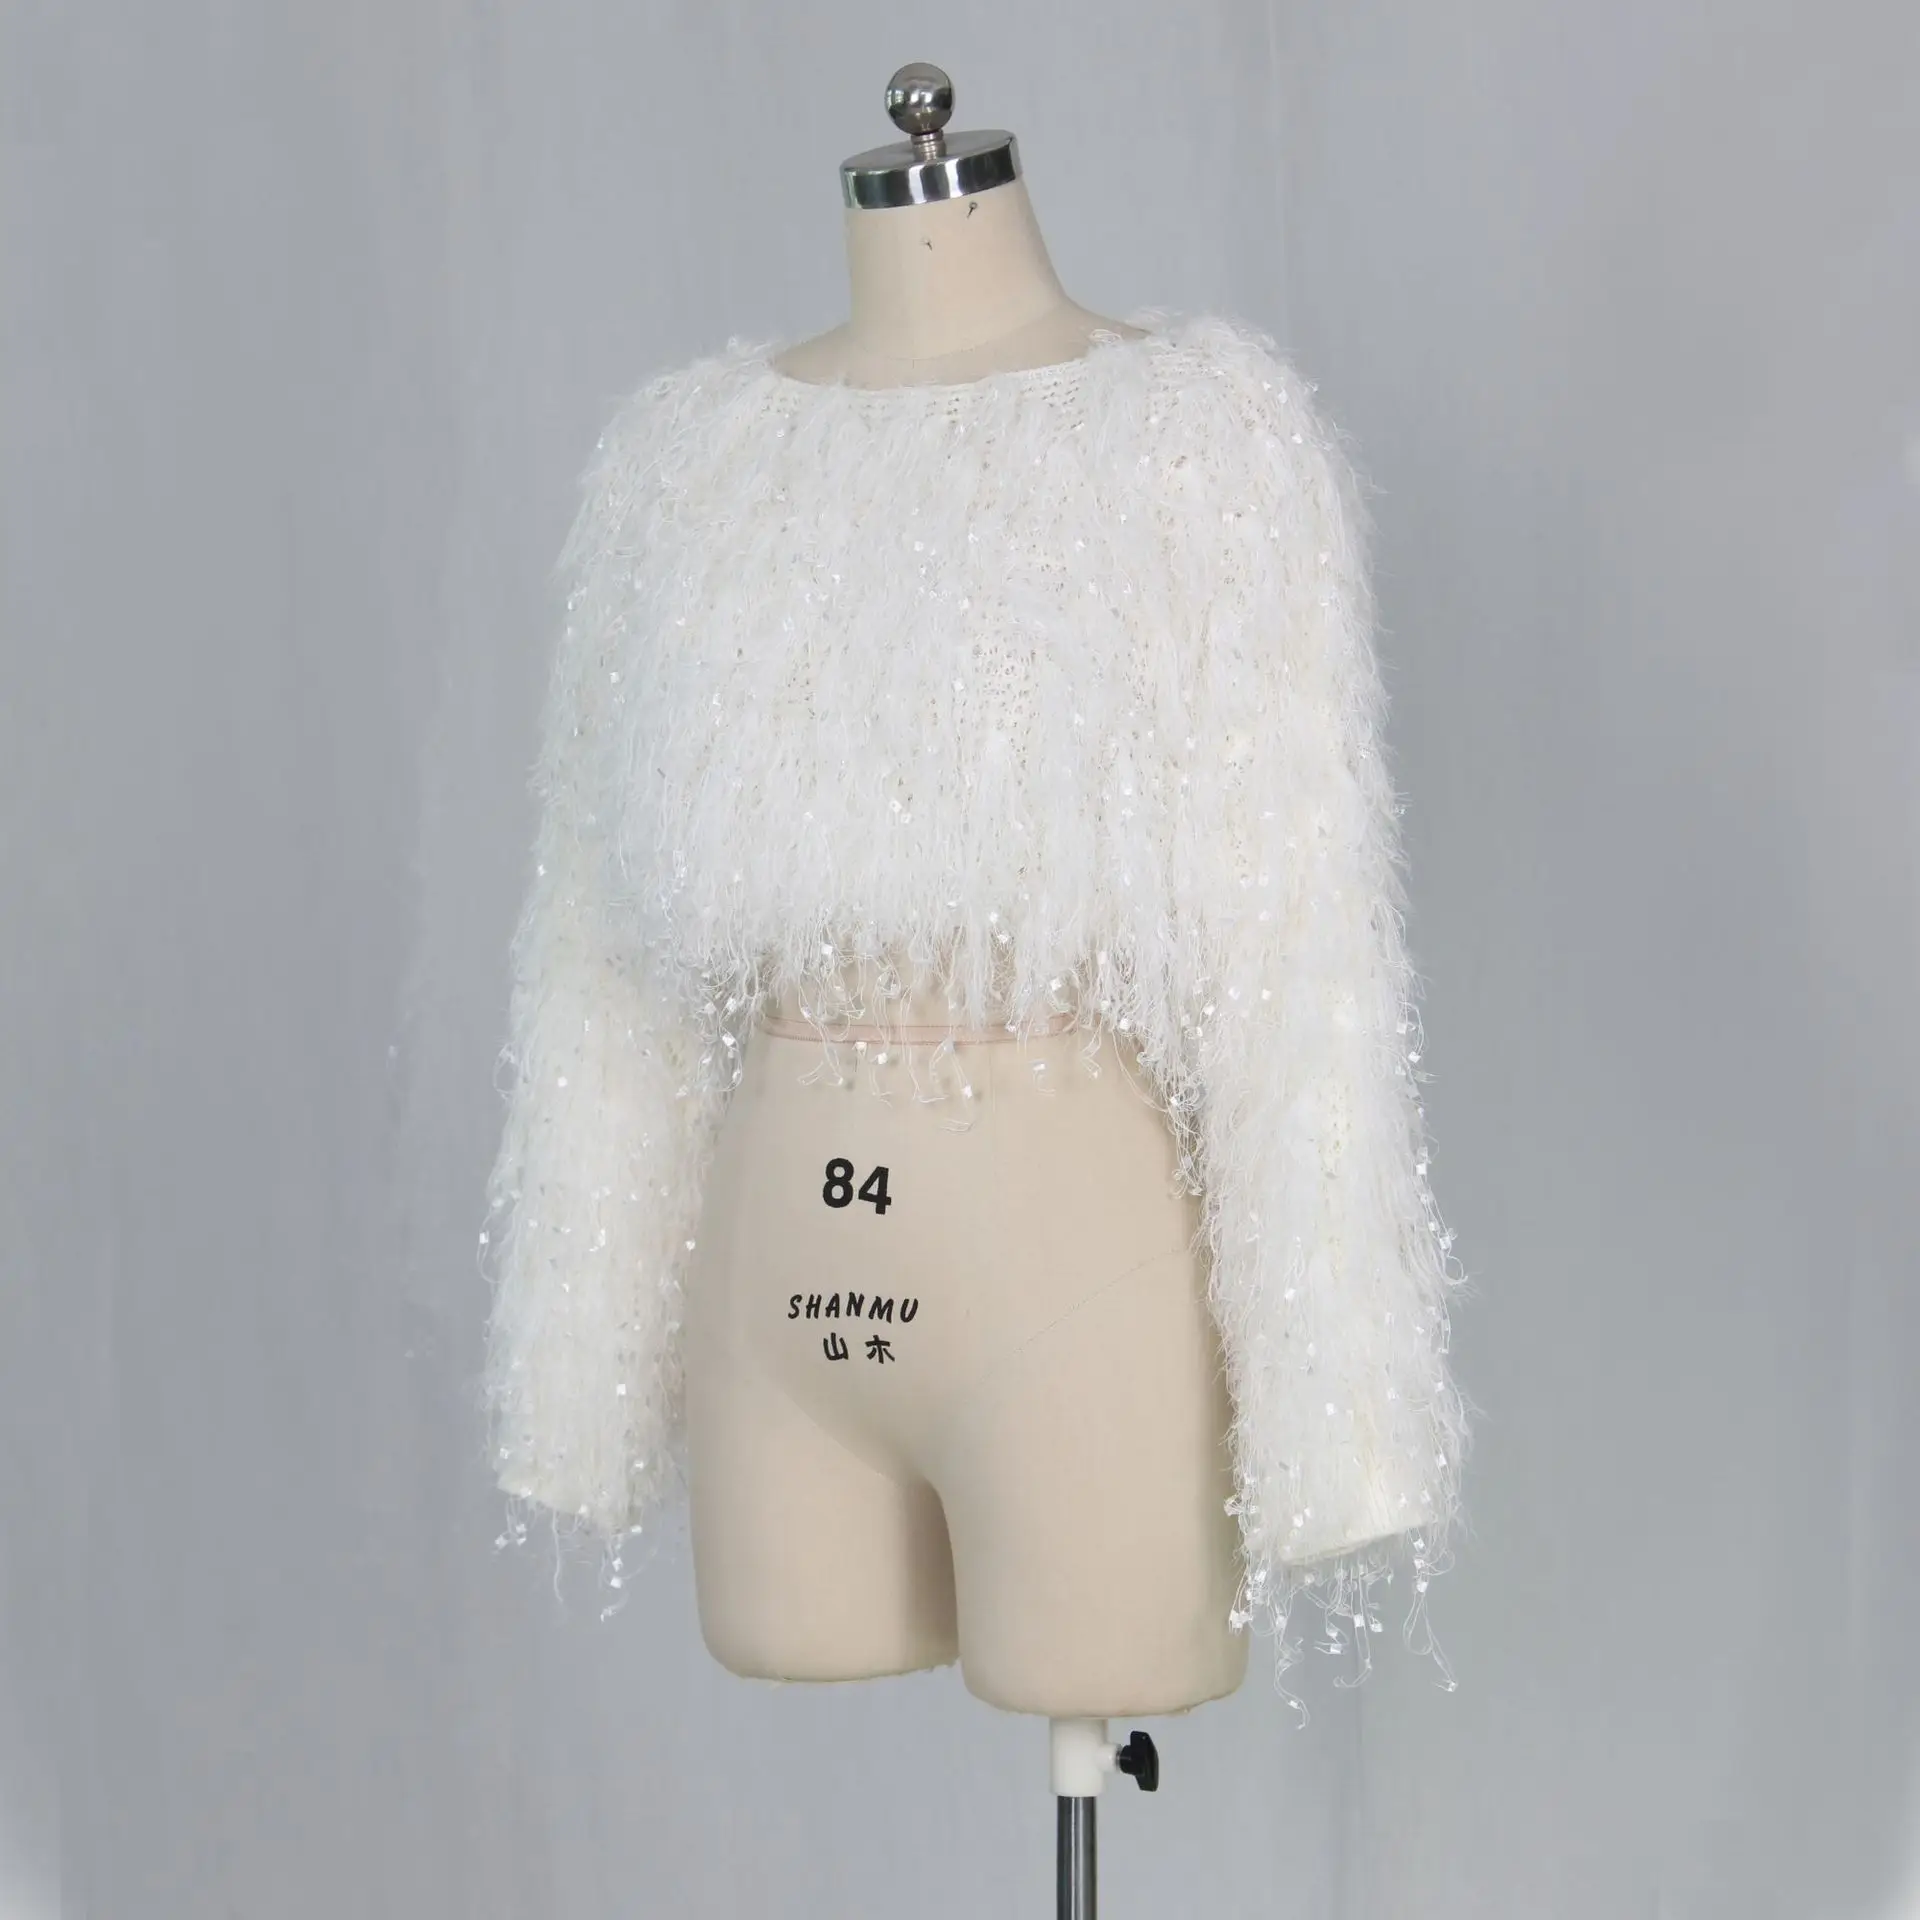 ANJAMANOR черно-белый вязаный кроп с кисточками Женский трикотажный свитер пуловер женские Свитера Мода зимняя одежда D48-AI55